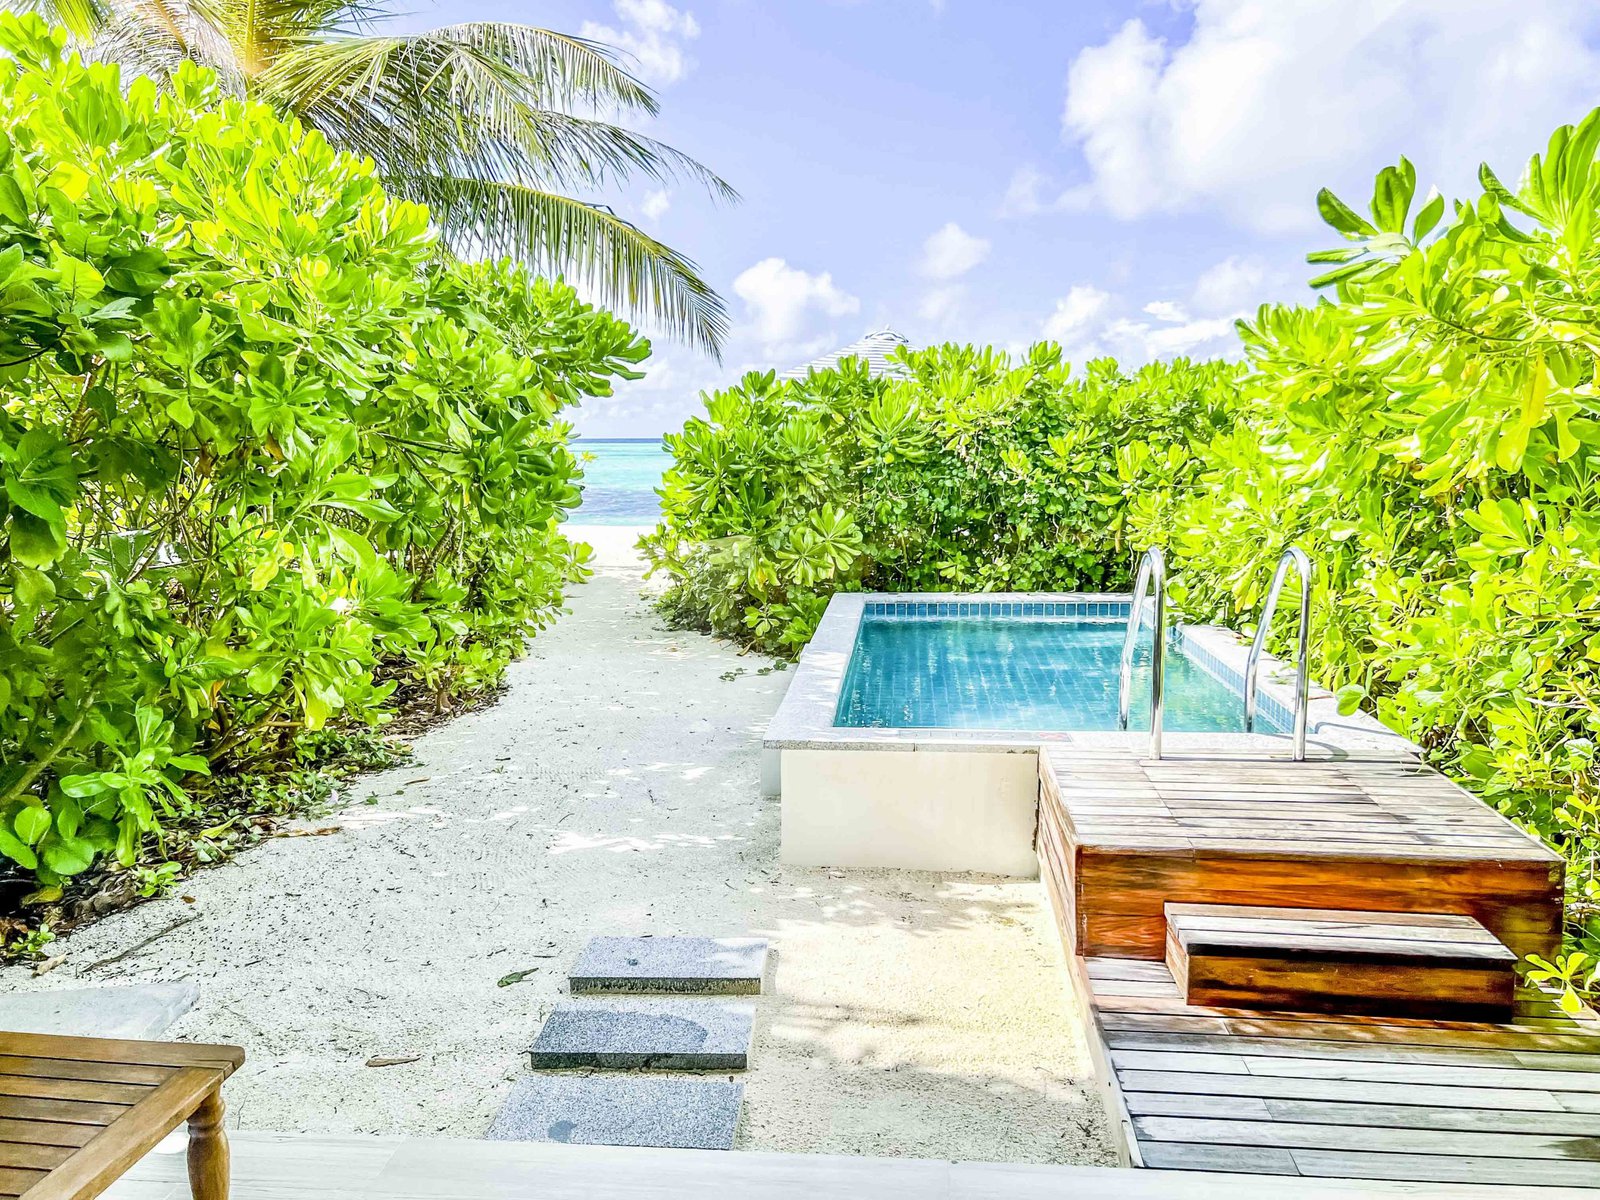 Le Meridien Maldives Resort Spa Beach Villa 4422